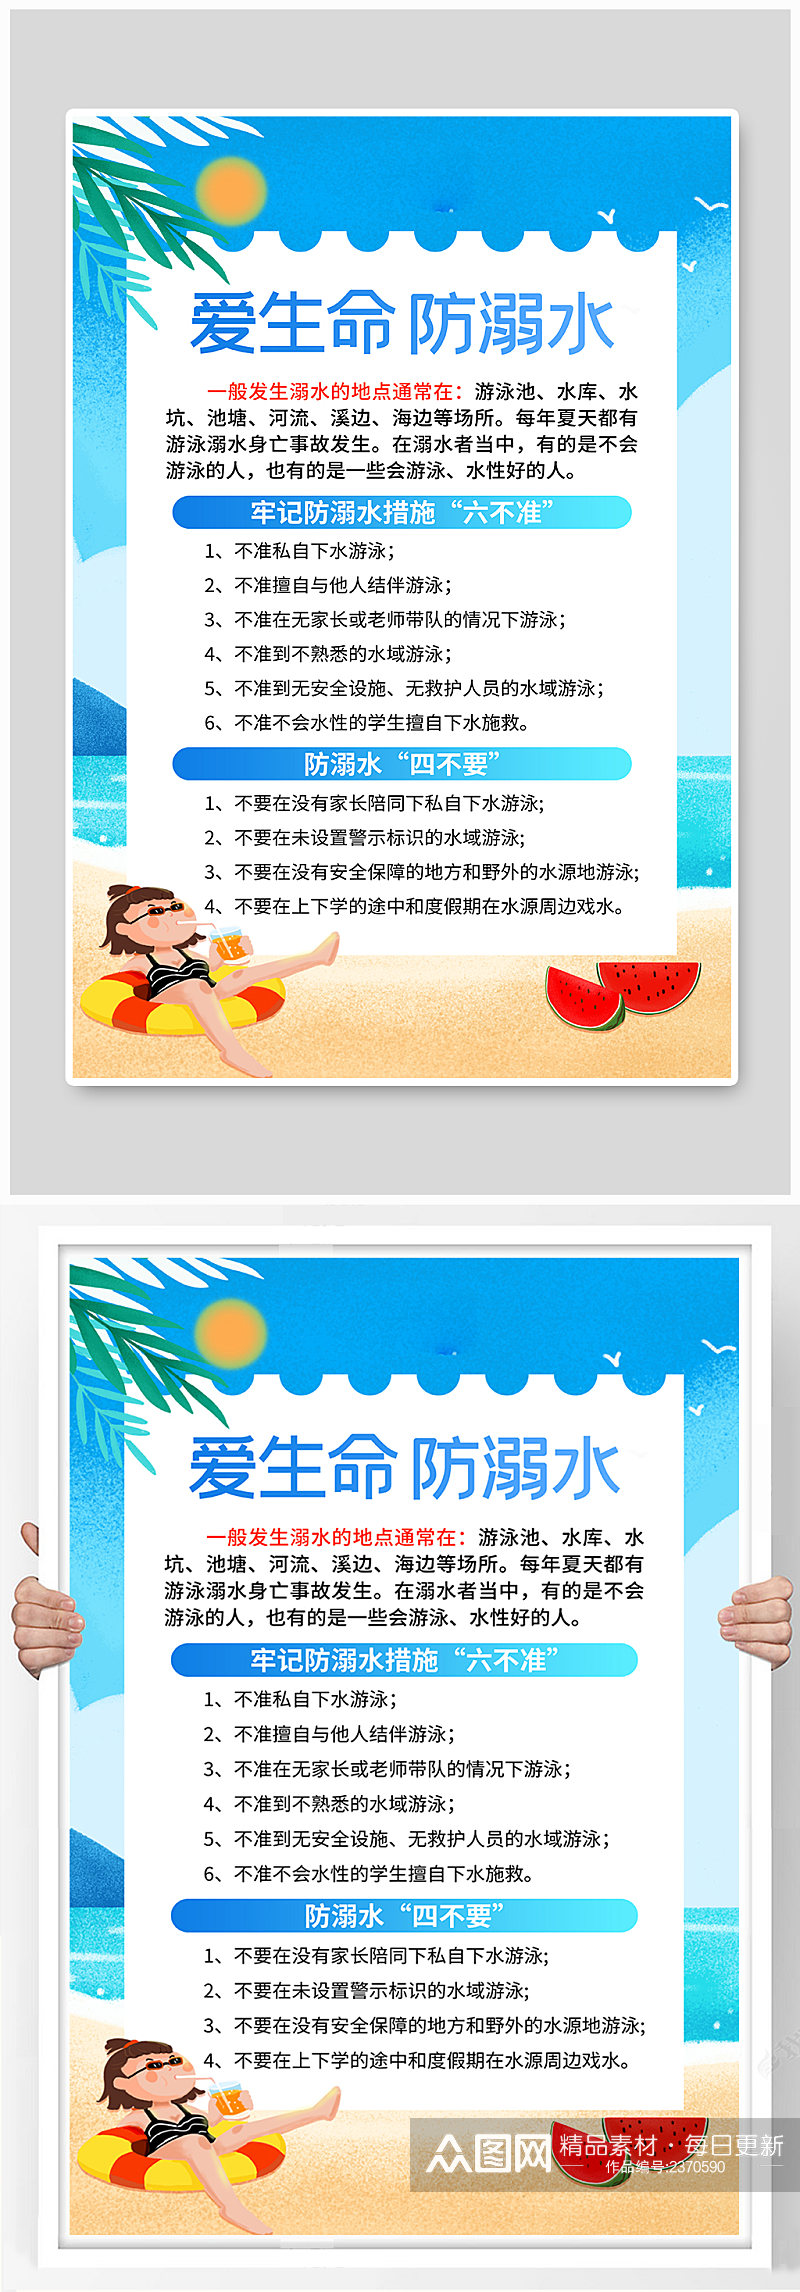 蓝色卡通可爱简约暑期安全防溺水宣传海报素材